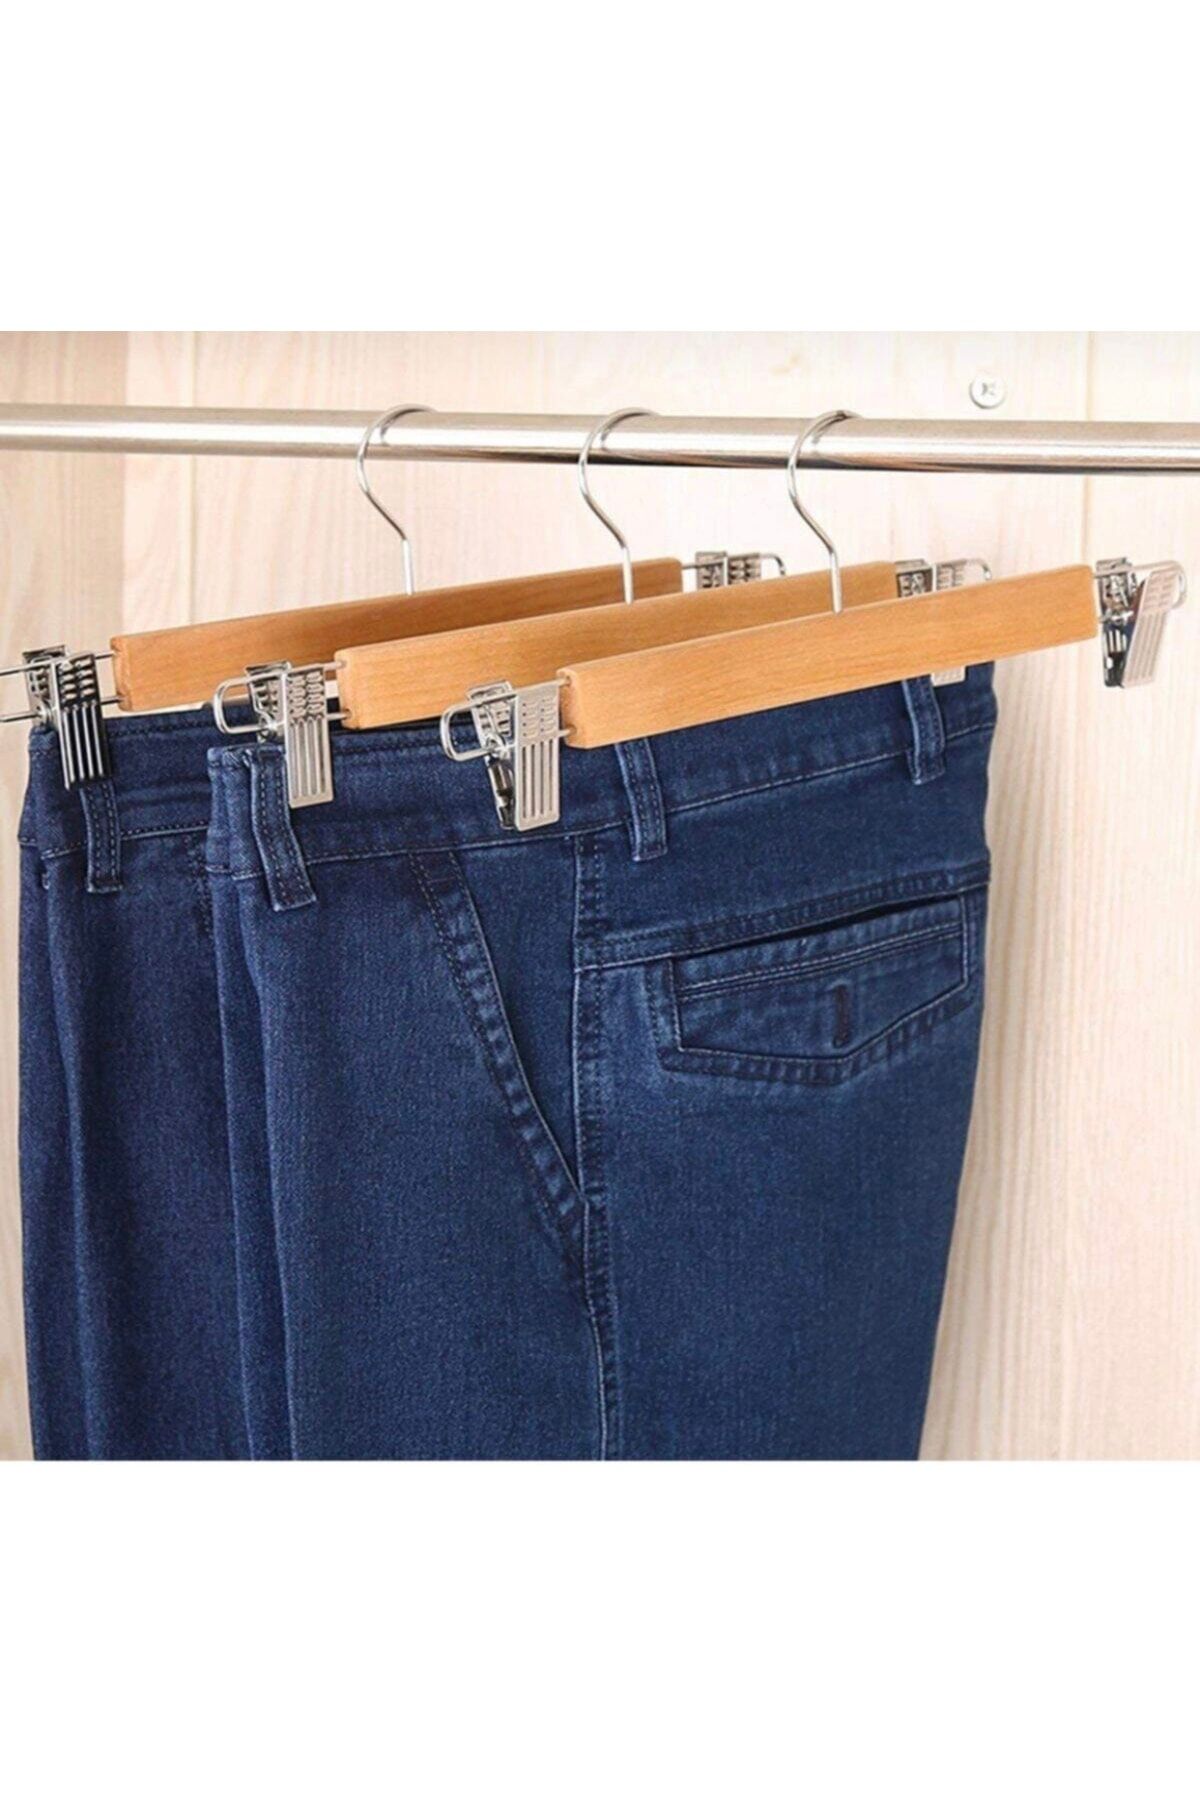 Как лучше вешать брюки в шкафу